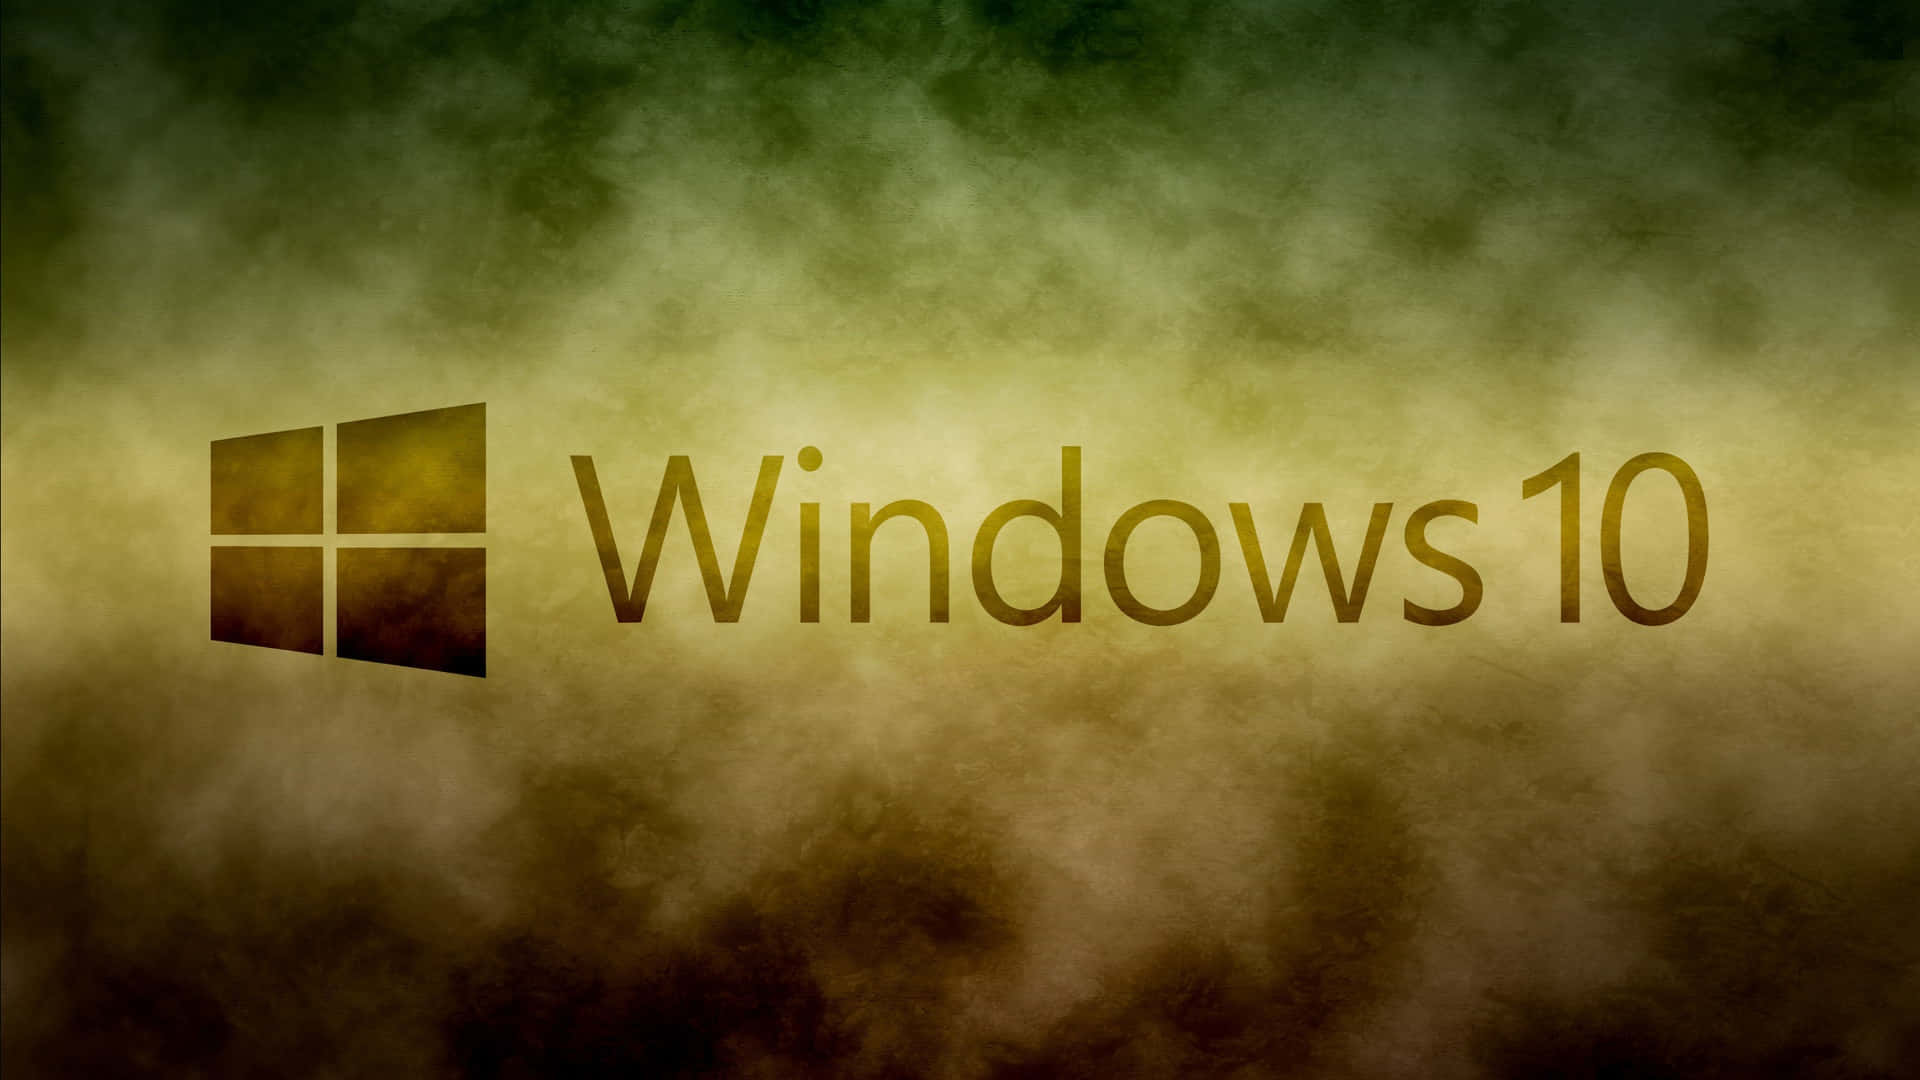 Etdynamisk Windows 10 Baggrundsbillede.